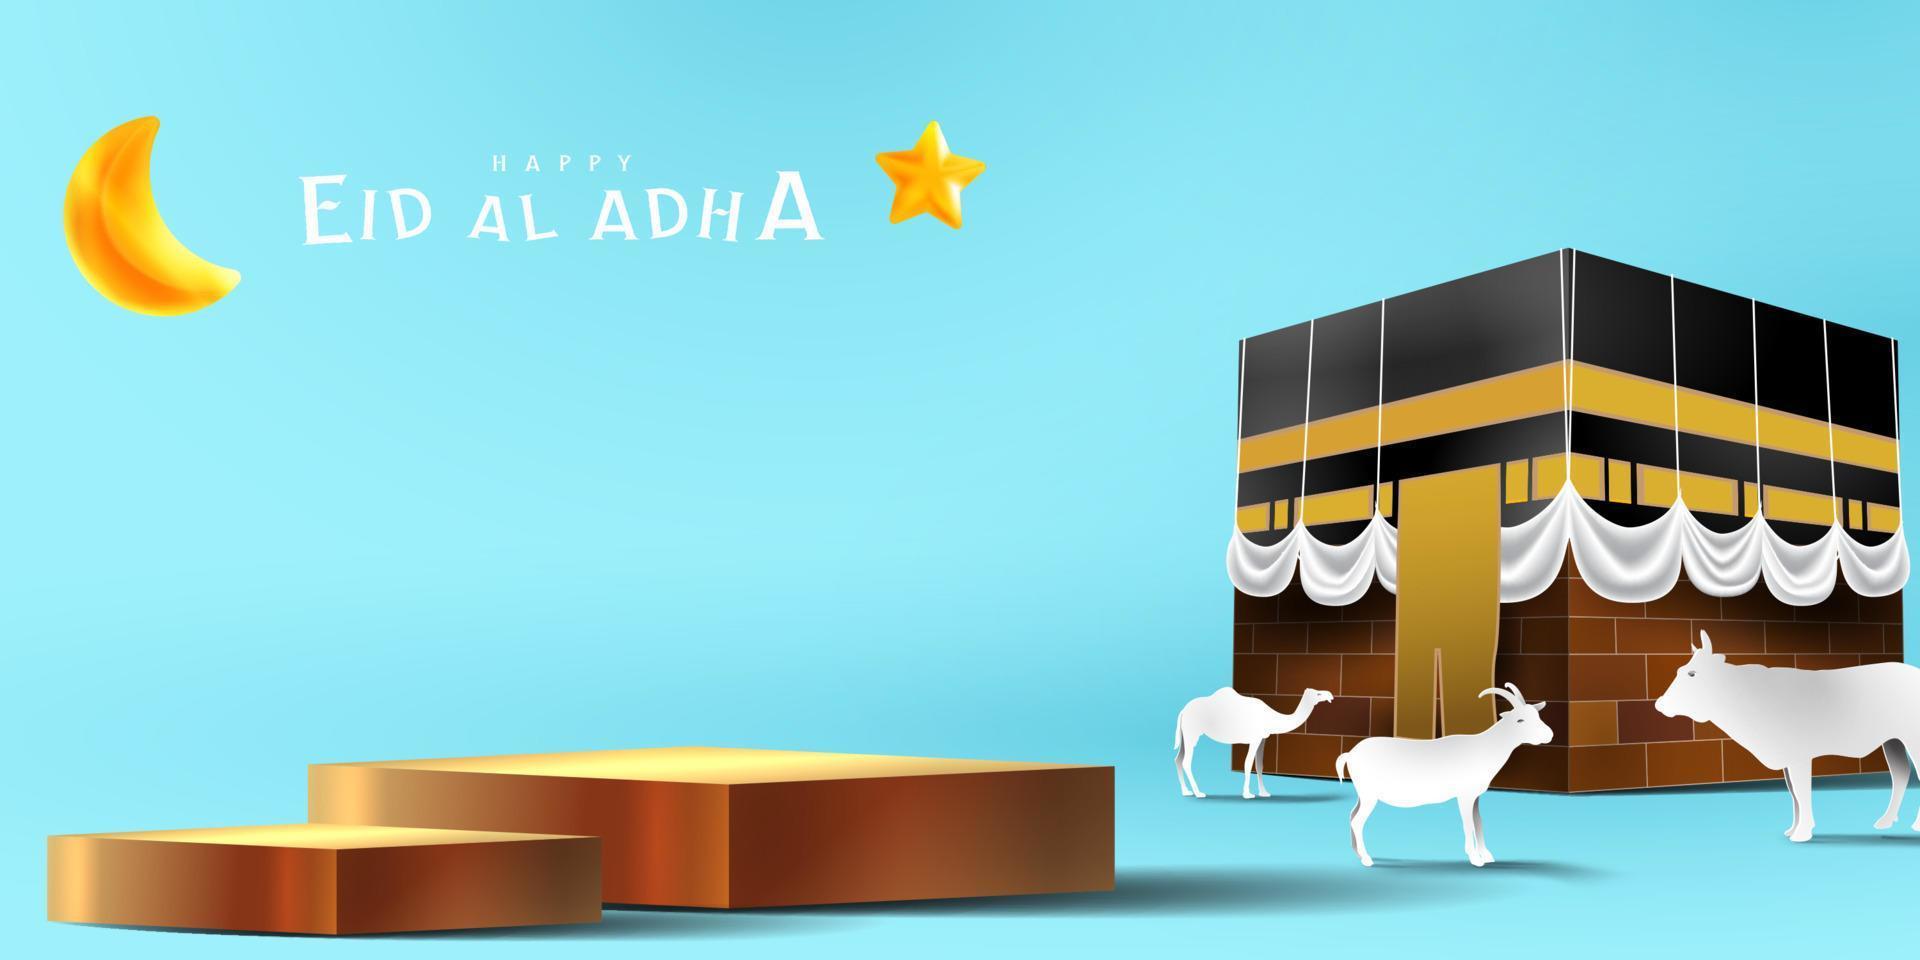 eid al adha decorazione islamica mostra lo sfondo del podio con capra, cammello, mucca, luna e stella. vetrina di prodotti per ramadan kareem, mawlid, eid al fitr, muharram vettore